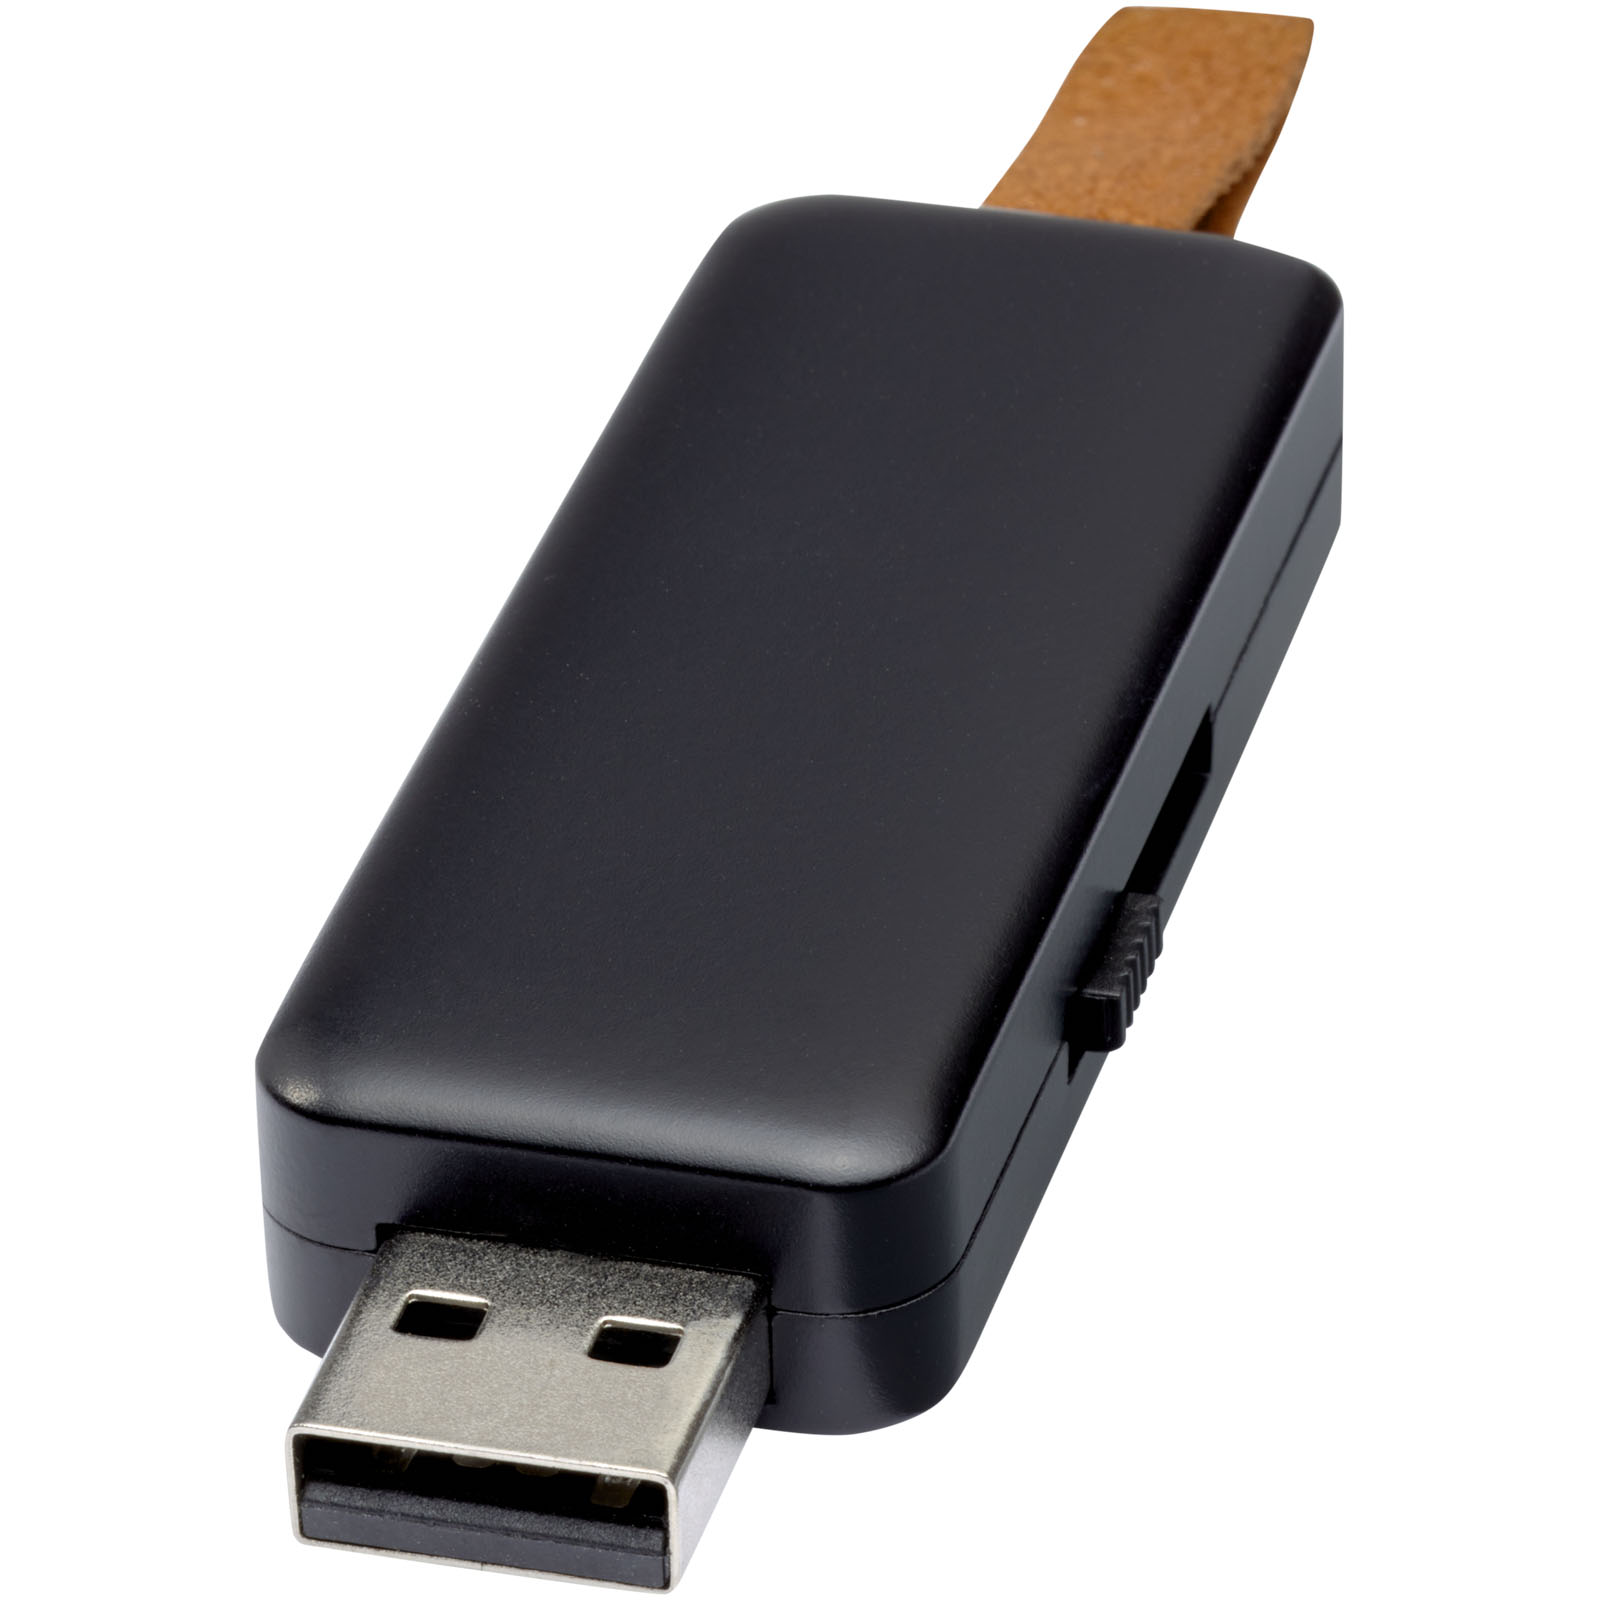 Clés USB - Clé USB lumineuse Gleam 4 Go